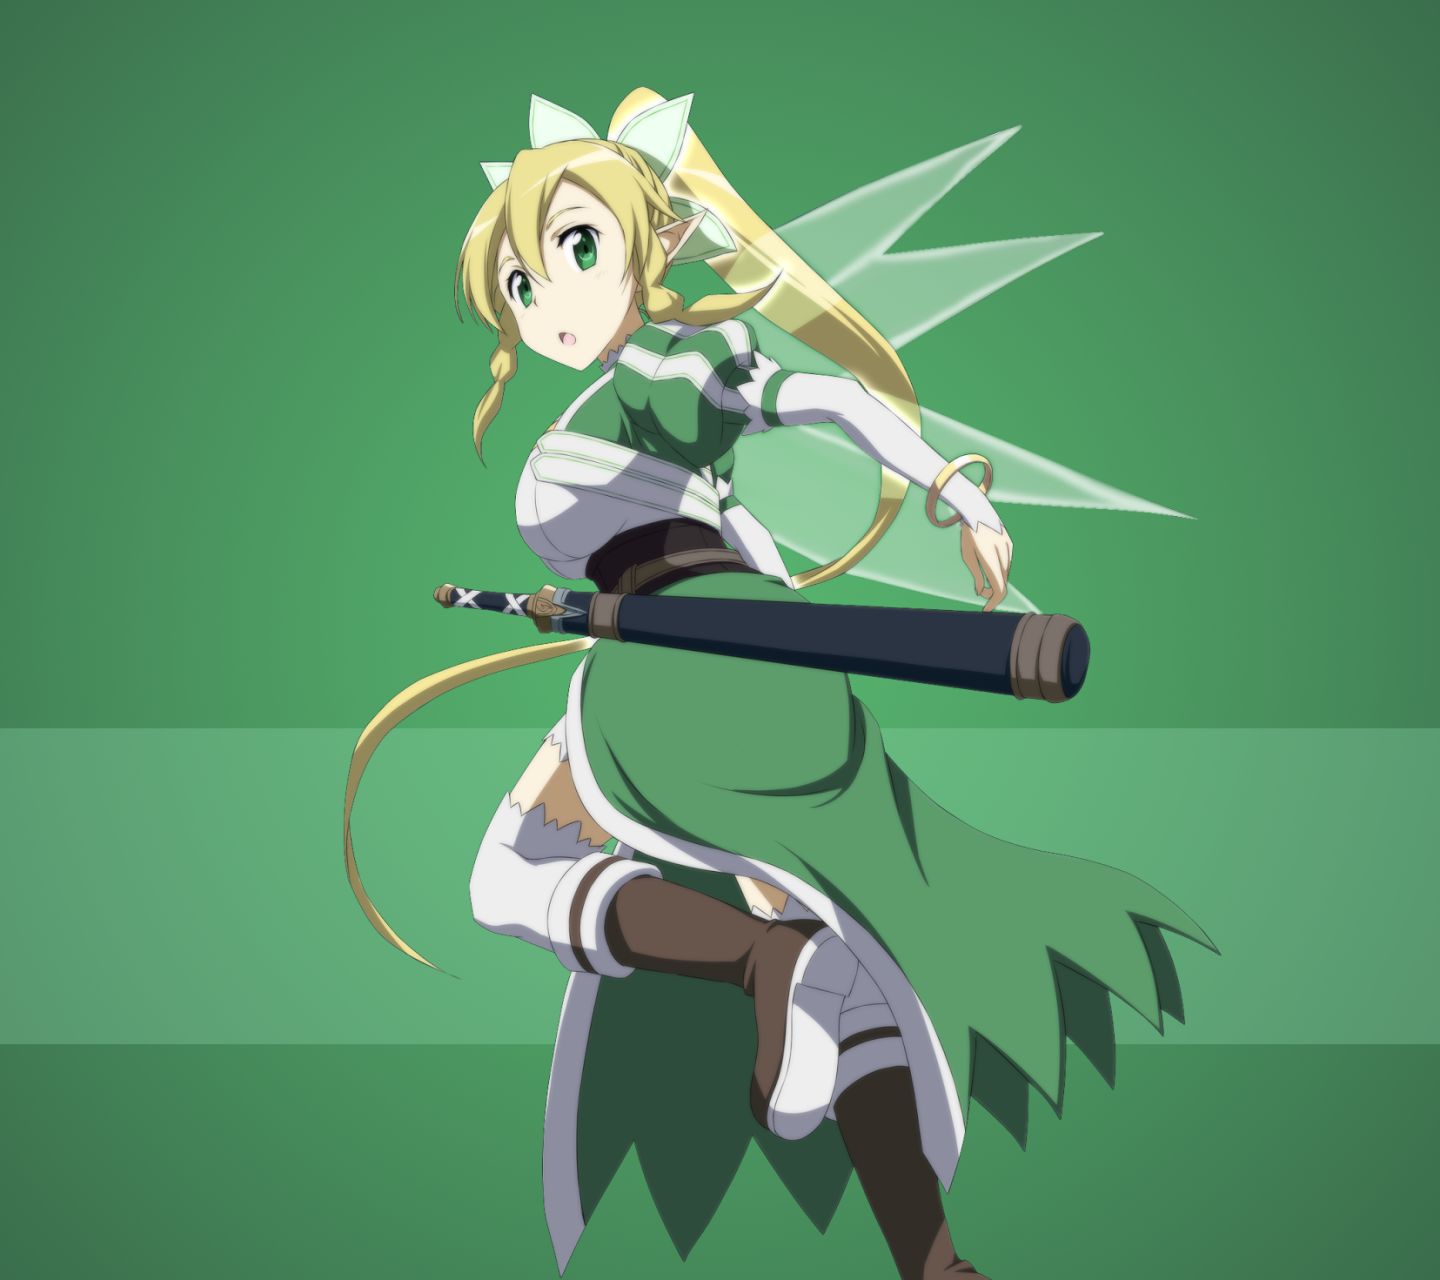 Téléchargez gratuitement l'image Sword Art Online, Animé, Suguha Kirigaya, Leafa (Art De L'épée En Ligne) sur le bureau de votre PC